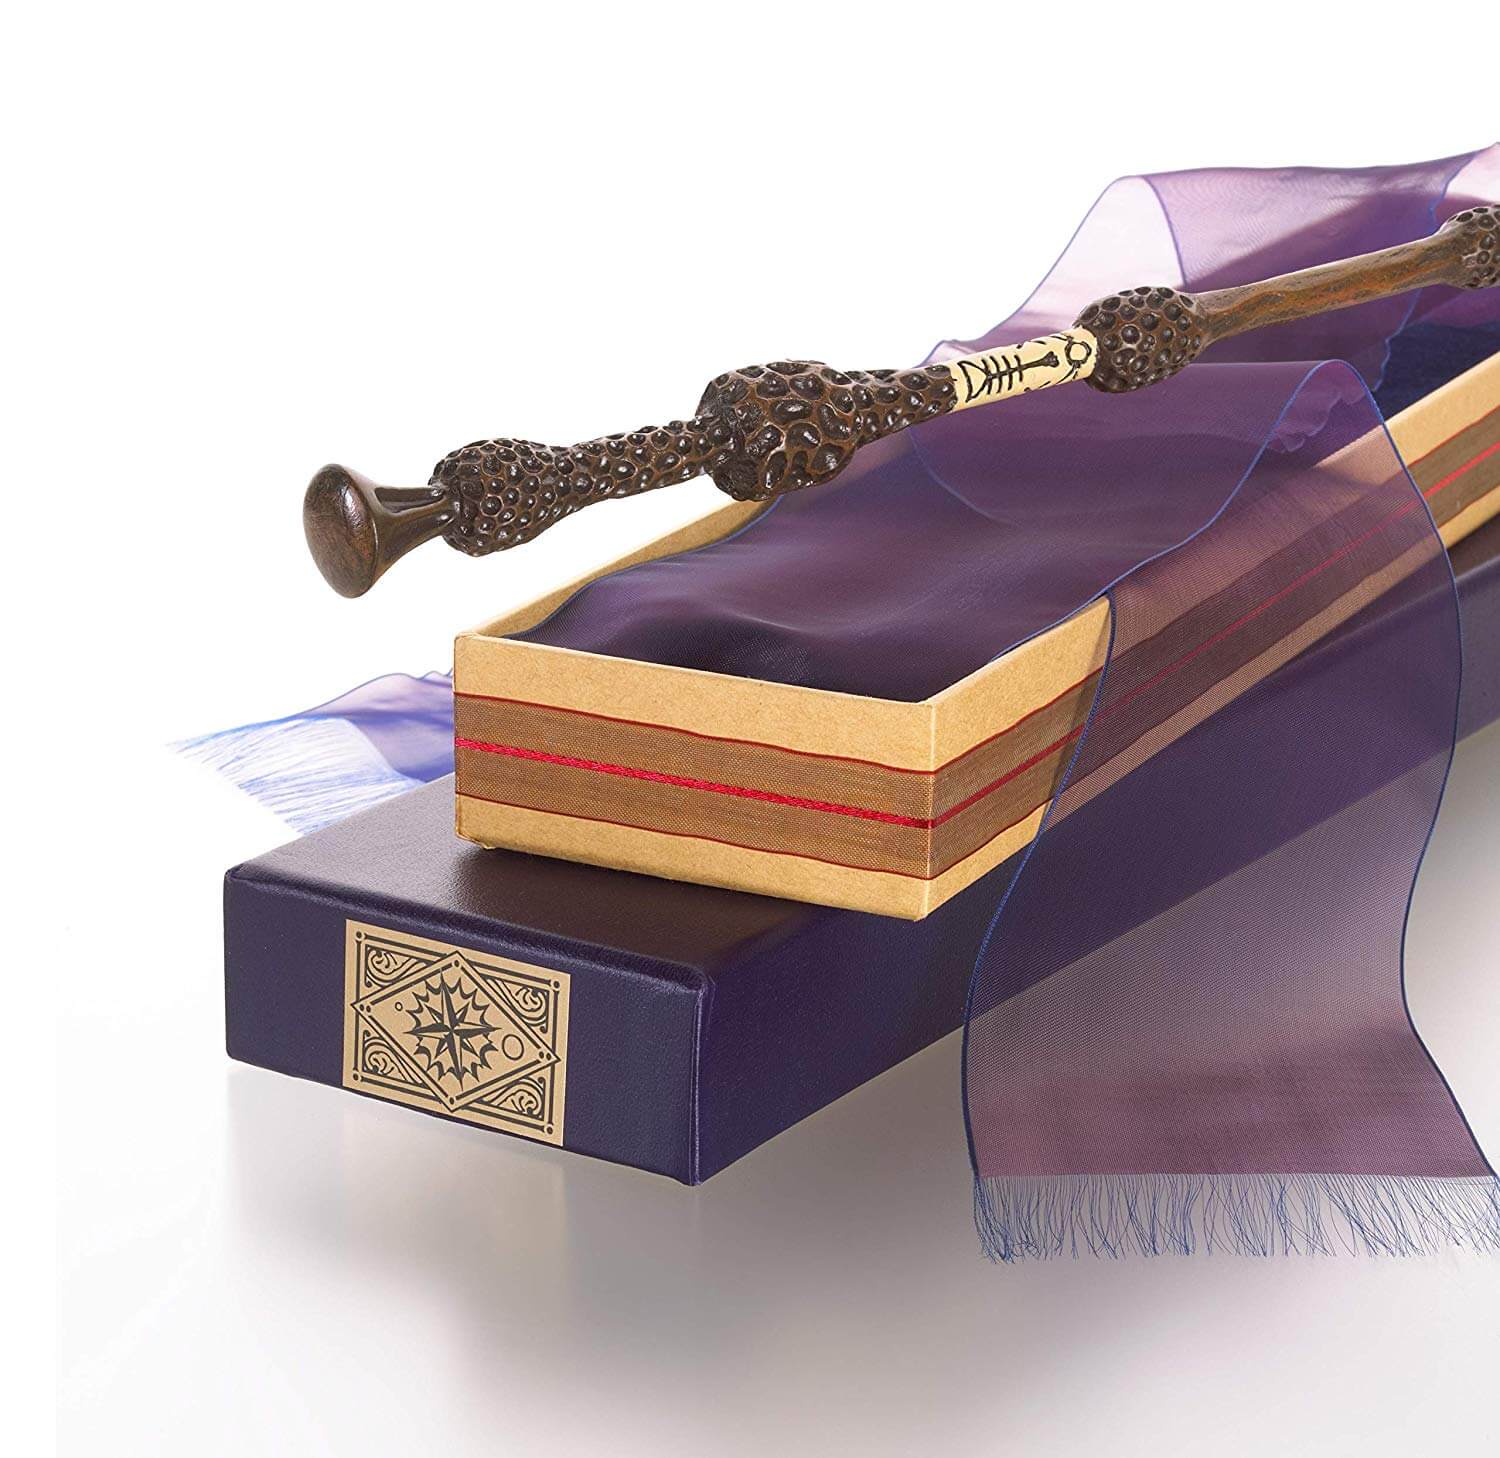 Wizarding World Baguette magique authentique d'Albus Dumbledore de